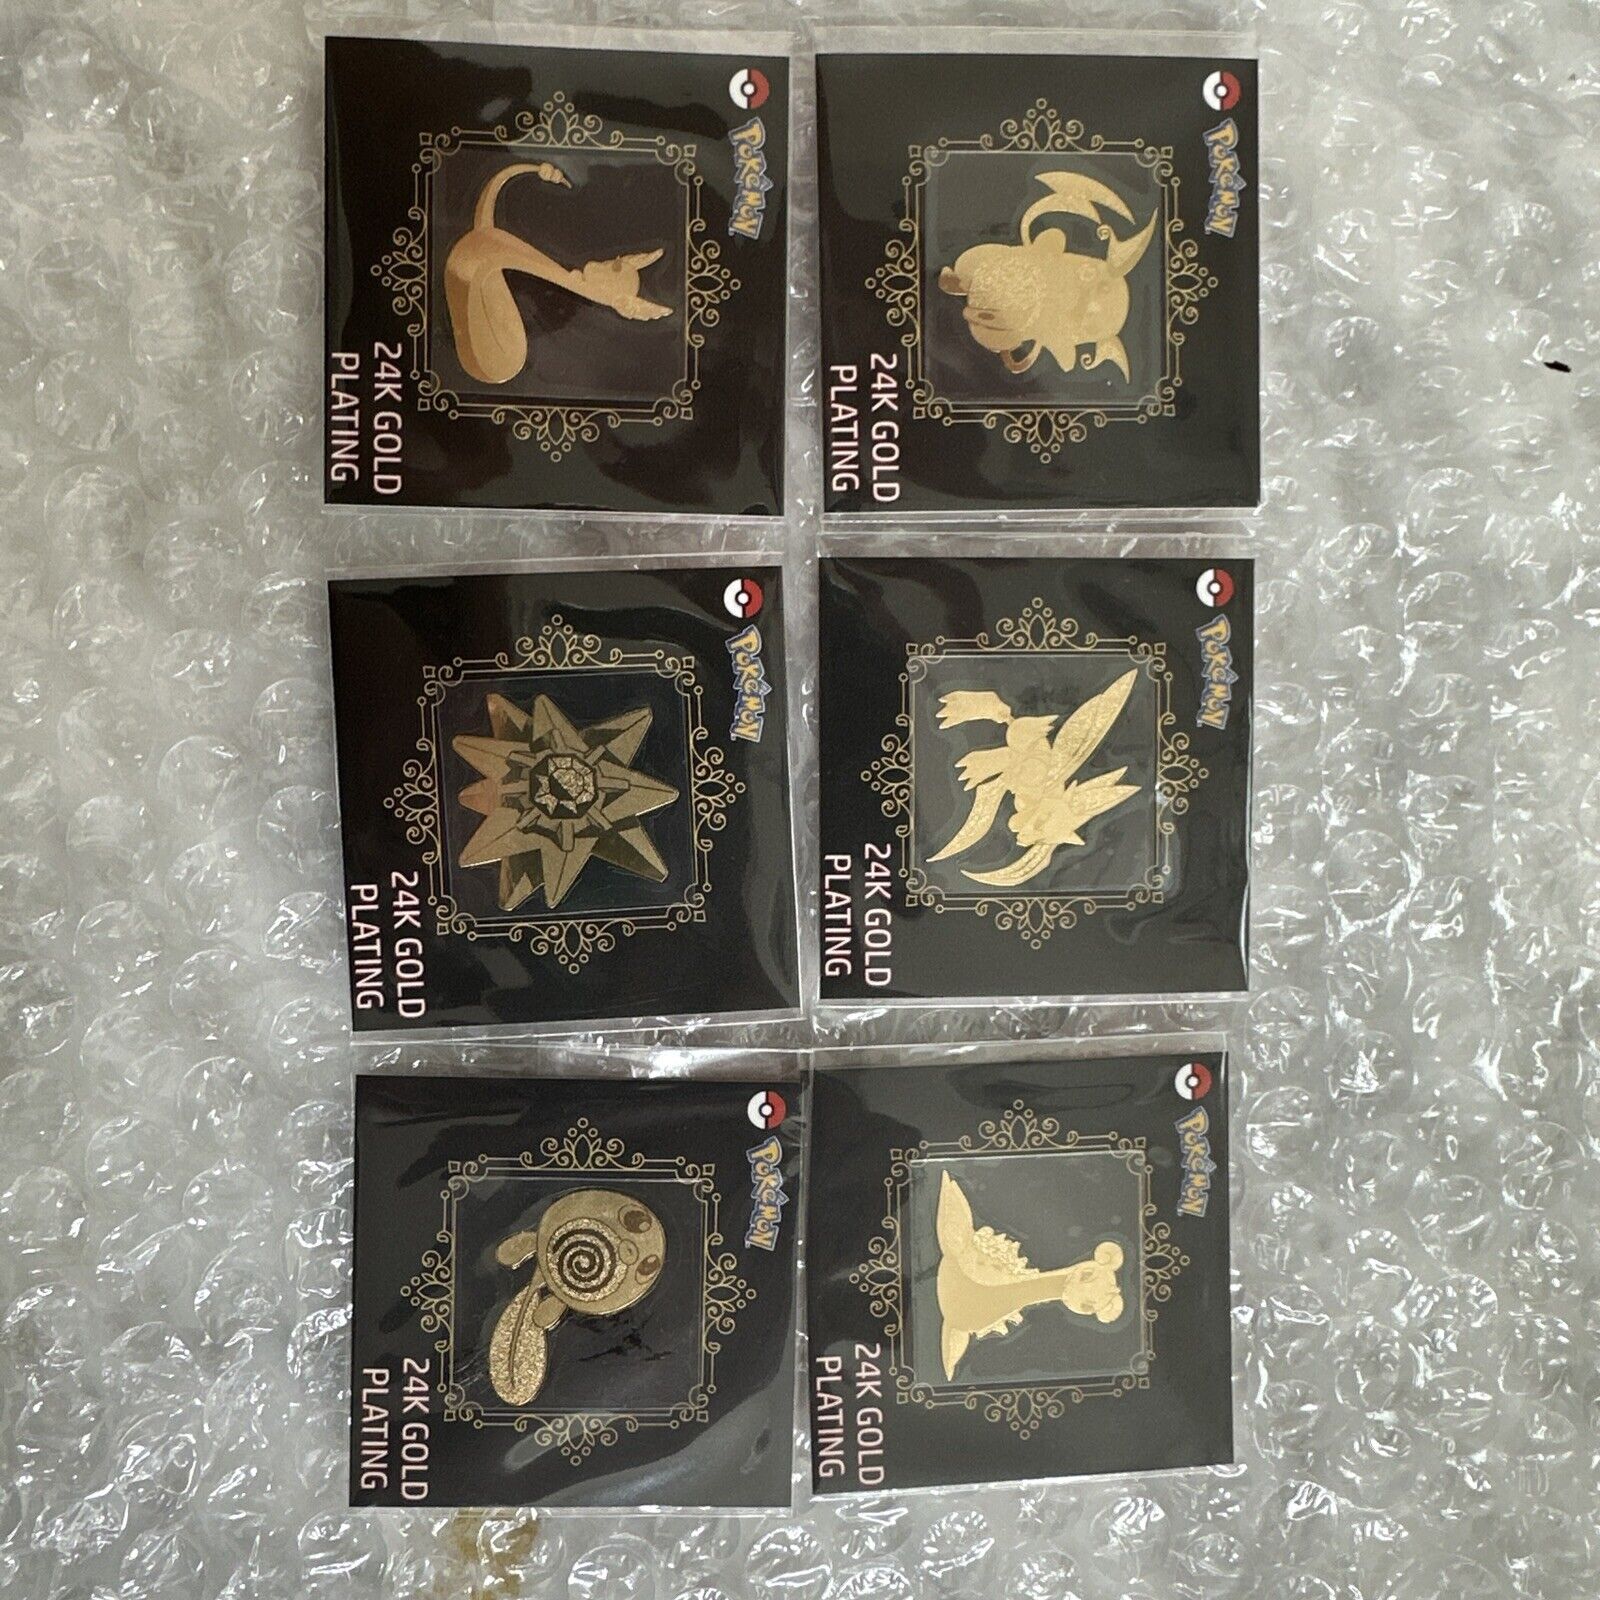 Pokémon 24k Gold Plated Stickers